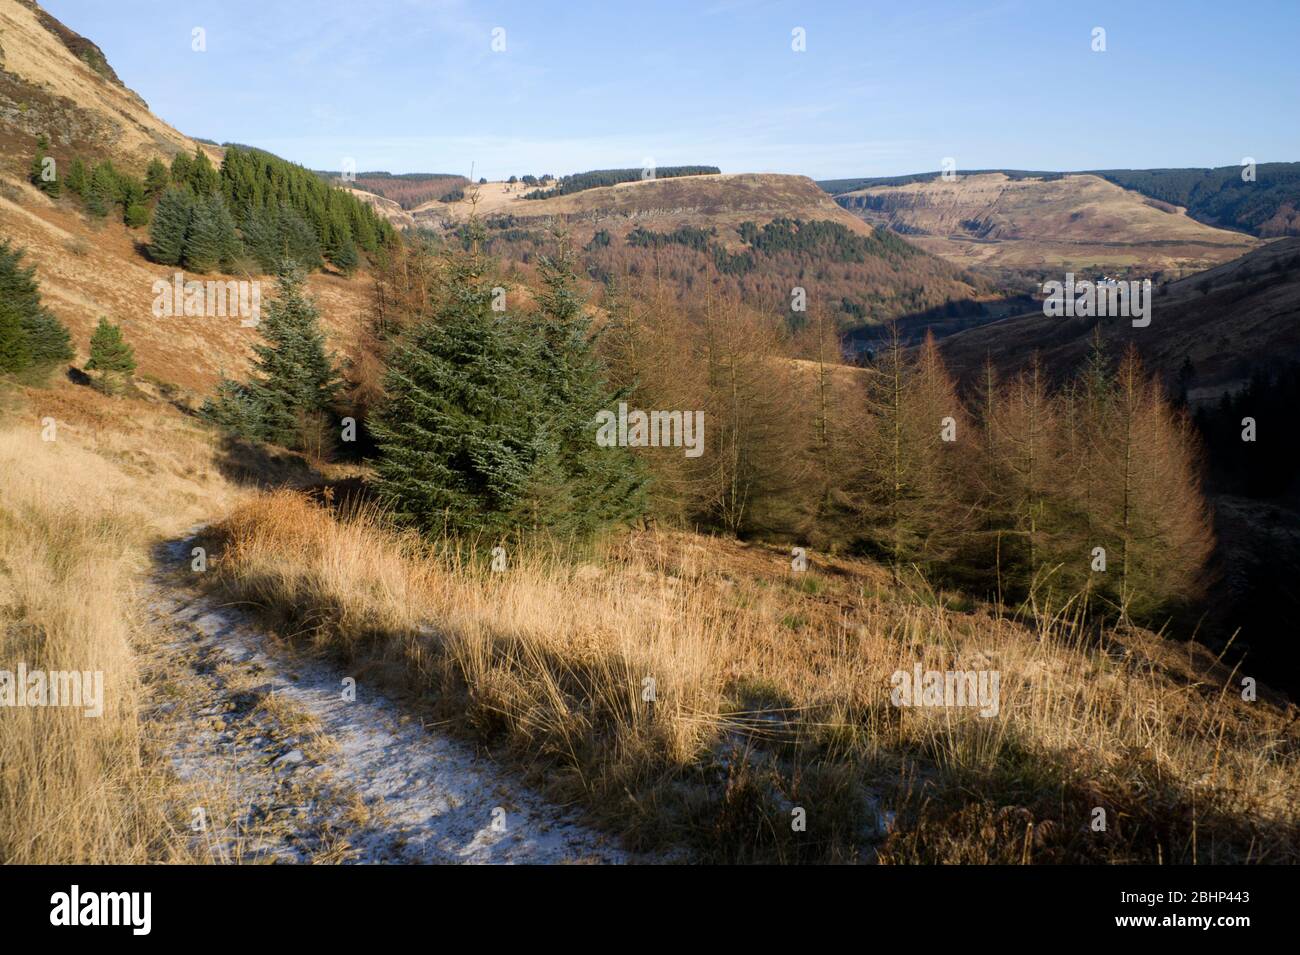 cwm seisig, blaen cwm, rhondda valley, rhondda cynon taf, south wales. Stock Photo